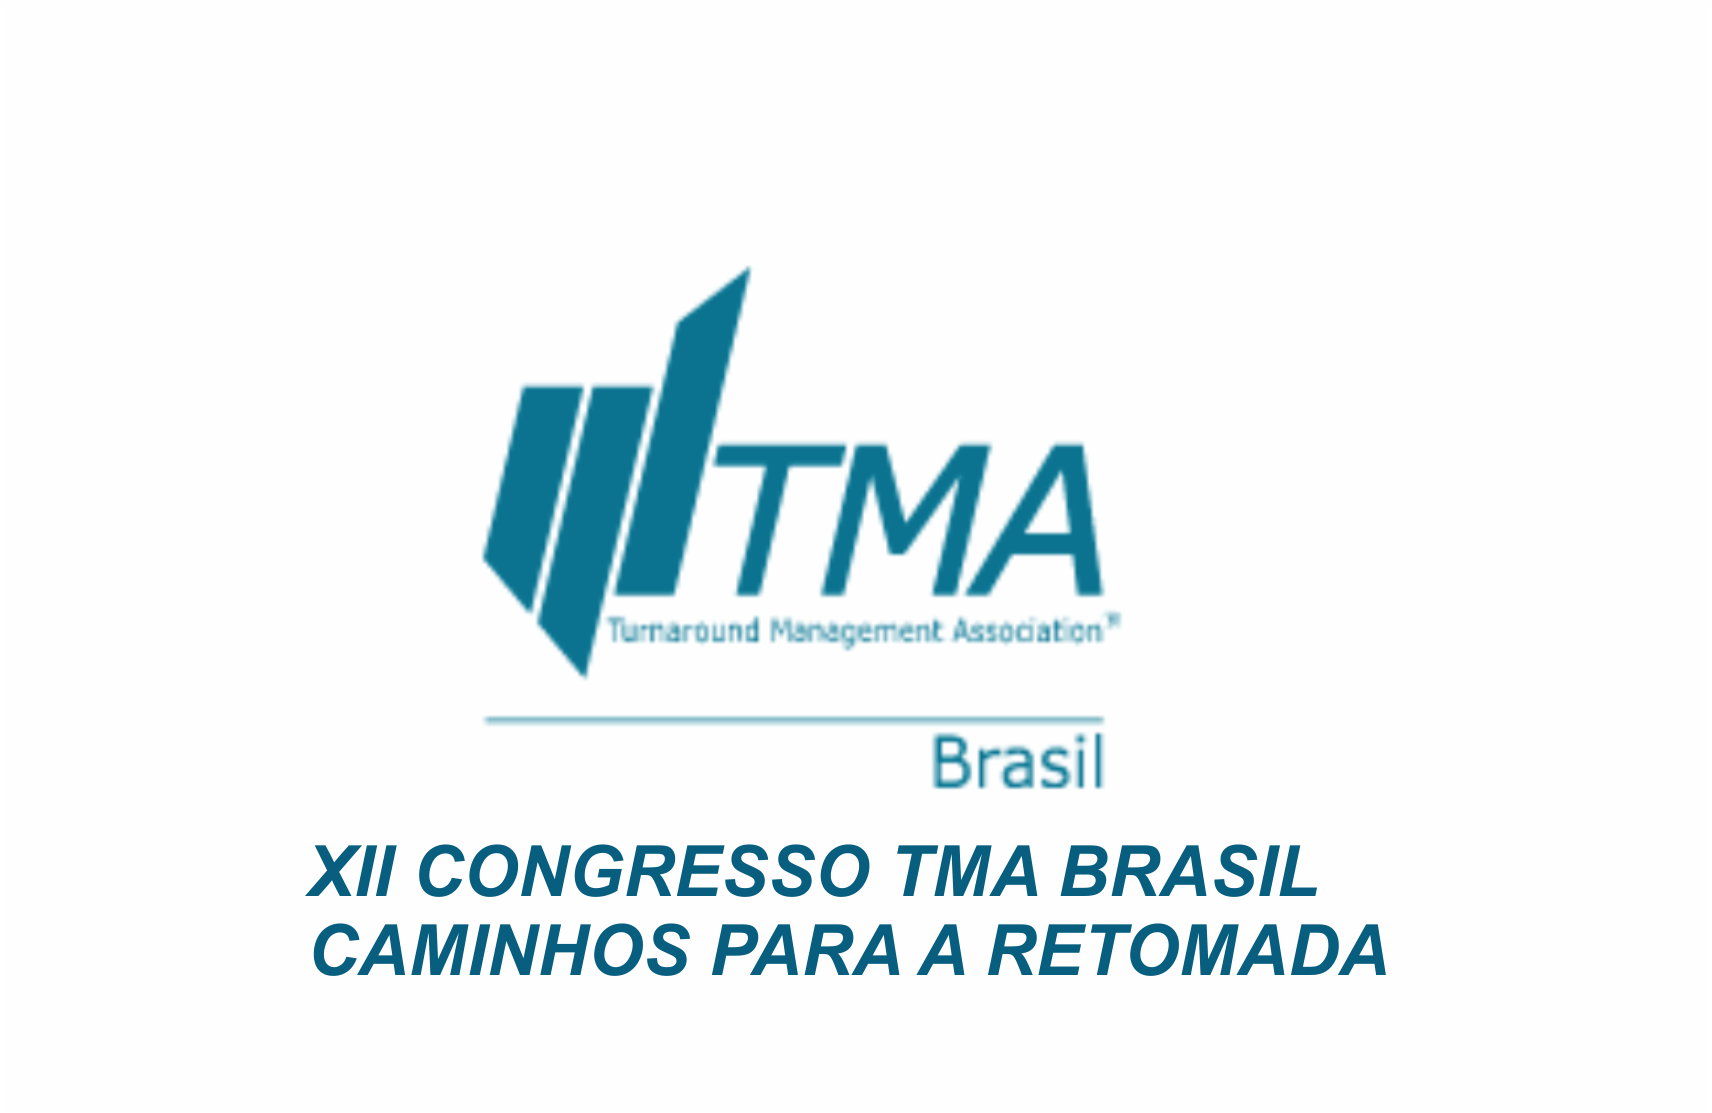 CONGRESSO TMA BRASIL. Filipe Denki, sócio do Lara Martins Advogados, participa de Congresso nacional de reestruturação e recuperação de empresas.